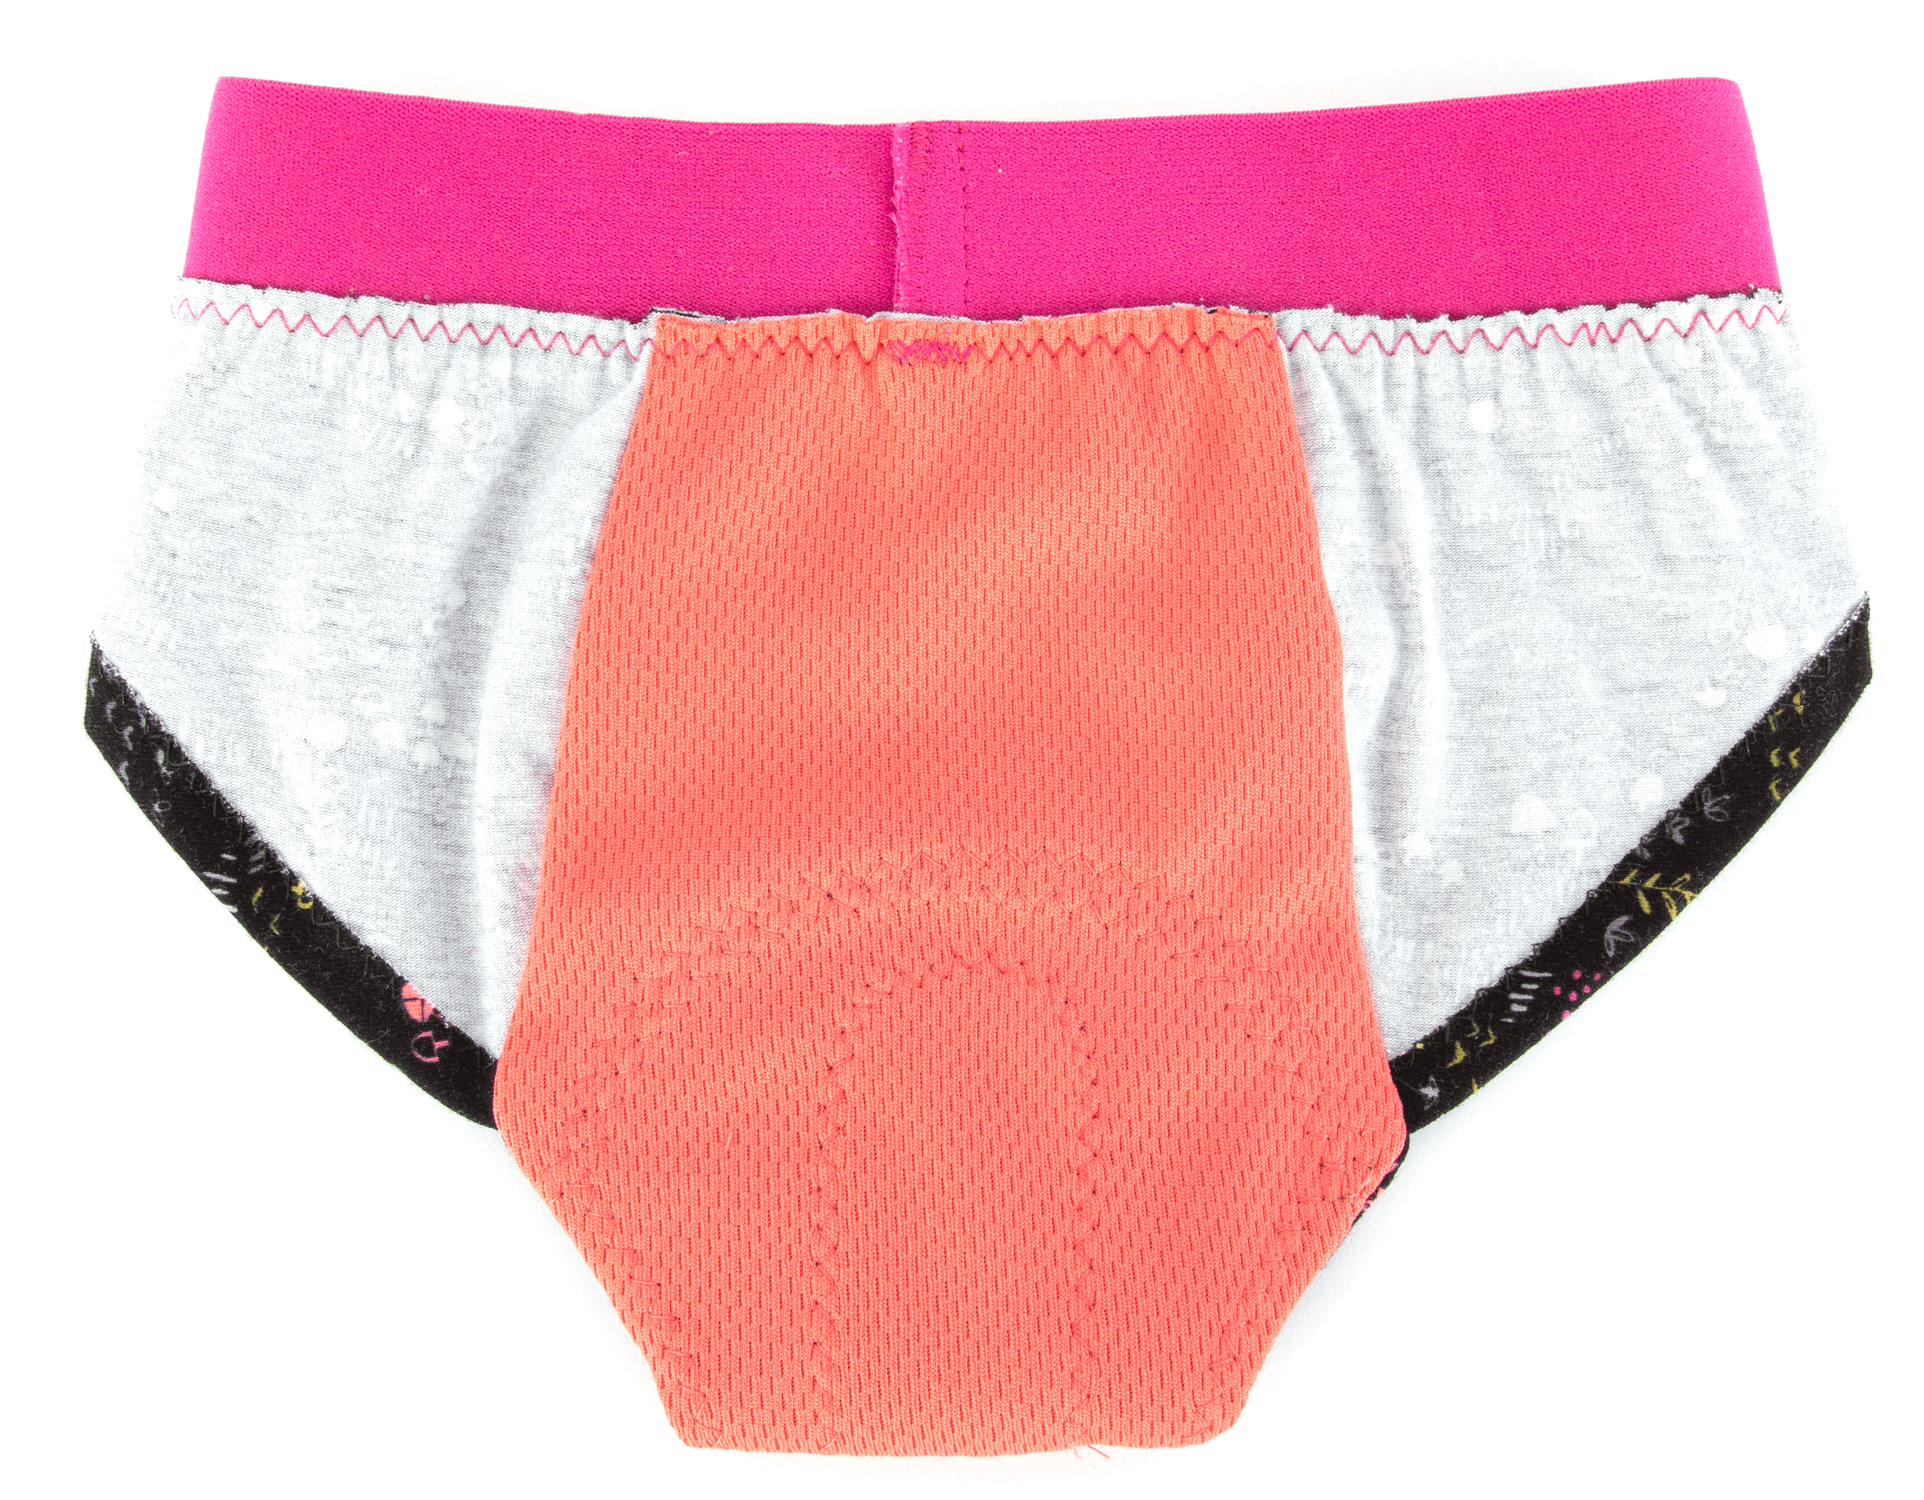 4344 // SARAH Period underwear and reusable pads